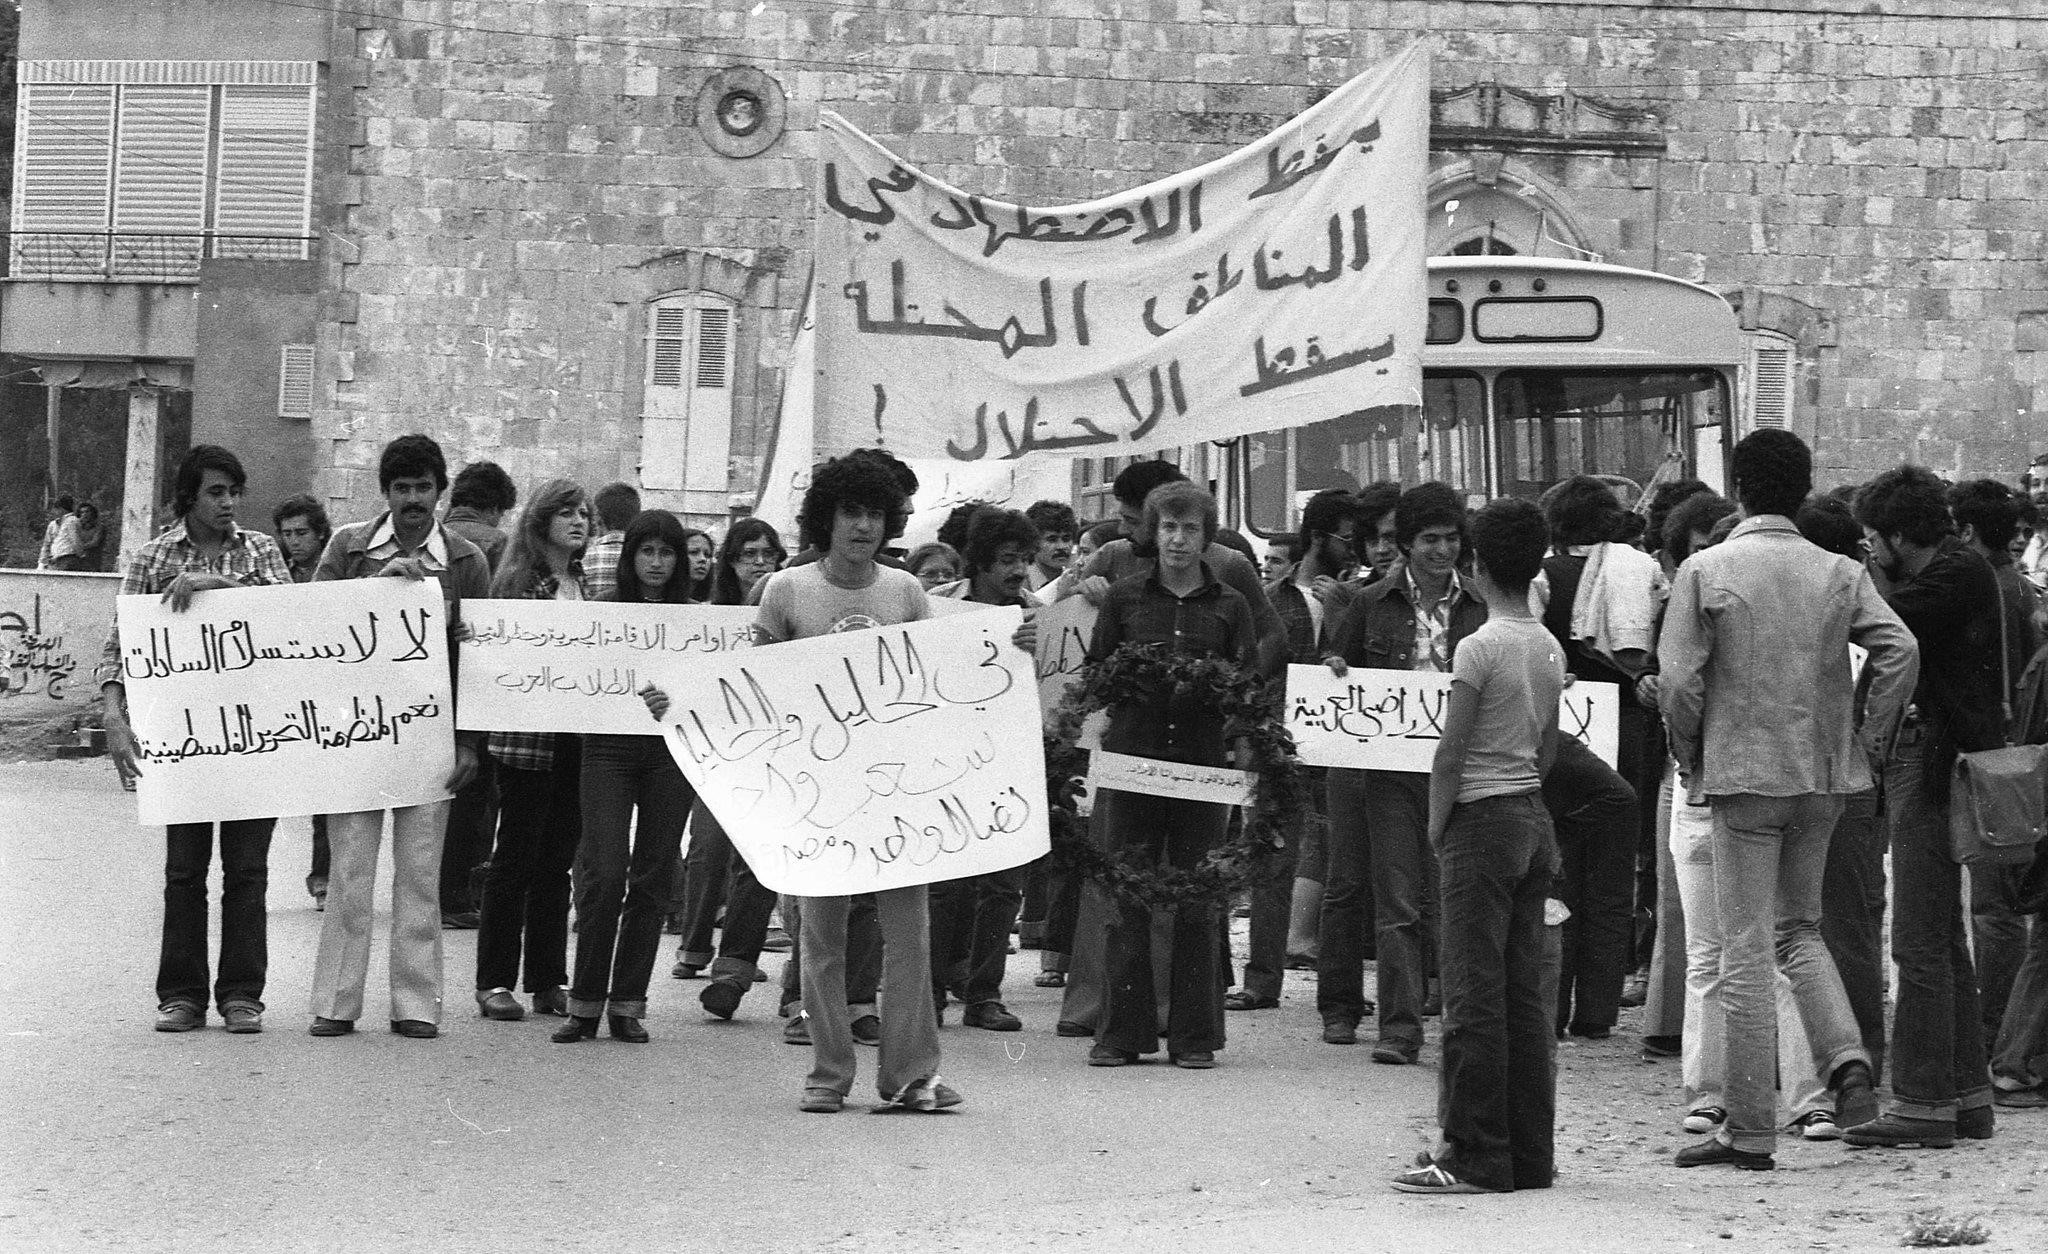 1979'da Nâsıra'daki Toprak Günü protestolarının bir fotoğrafı. Afişte, "El Halil ve Celîle'de bir halk, bir mücadele" yazıyor.